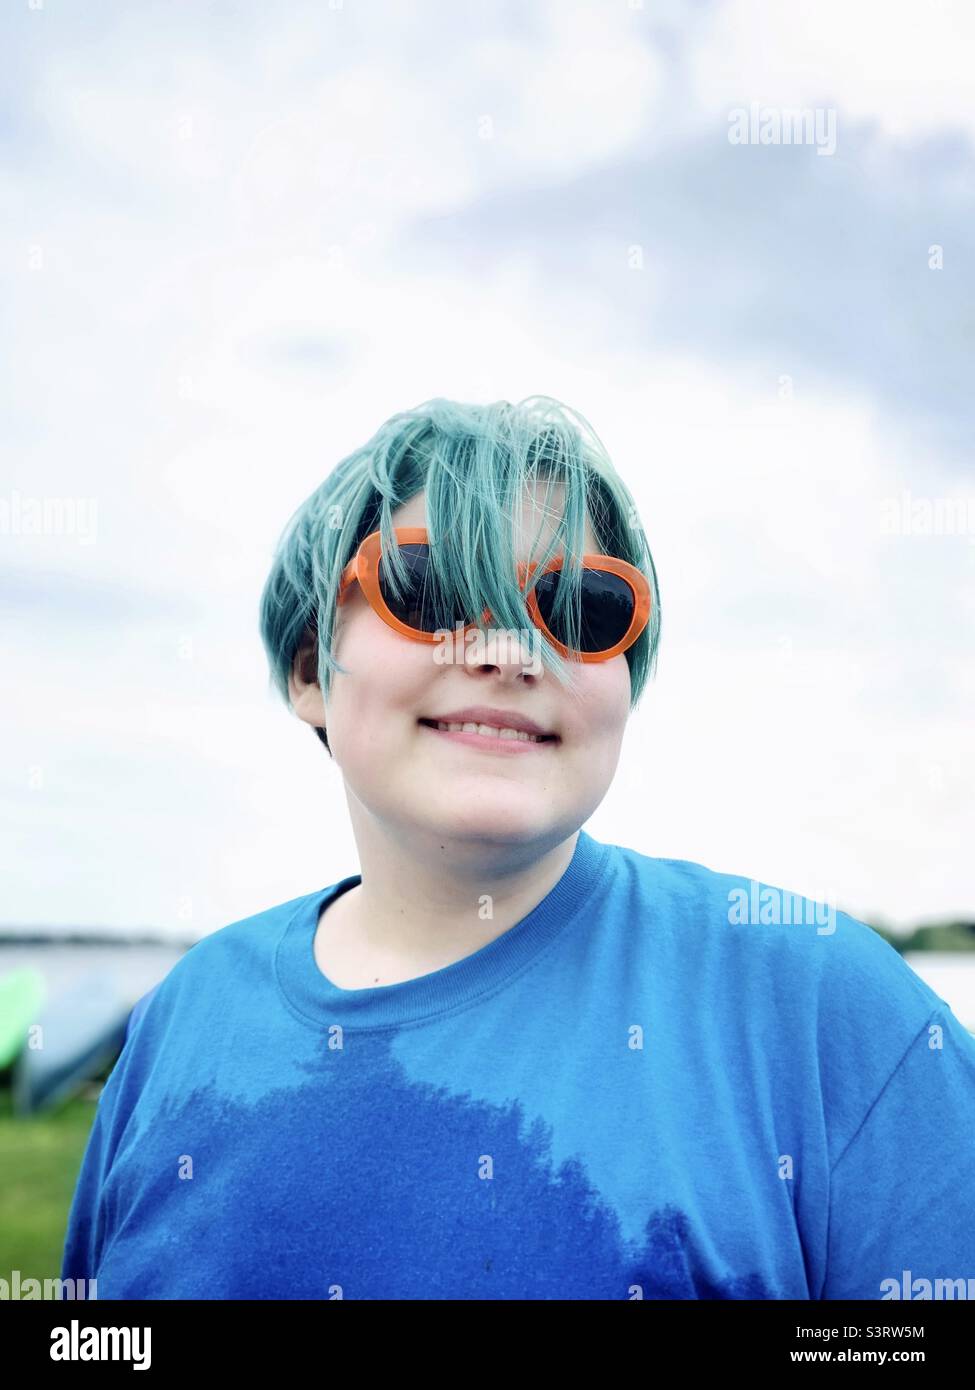 Jeune garçon souriant avec des cheveux colorés et des lunettes de soleil. Banque D'Images